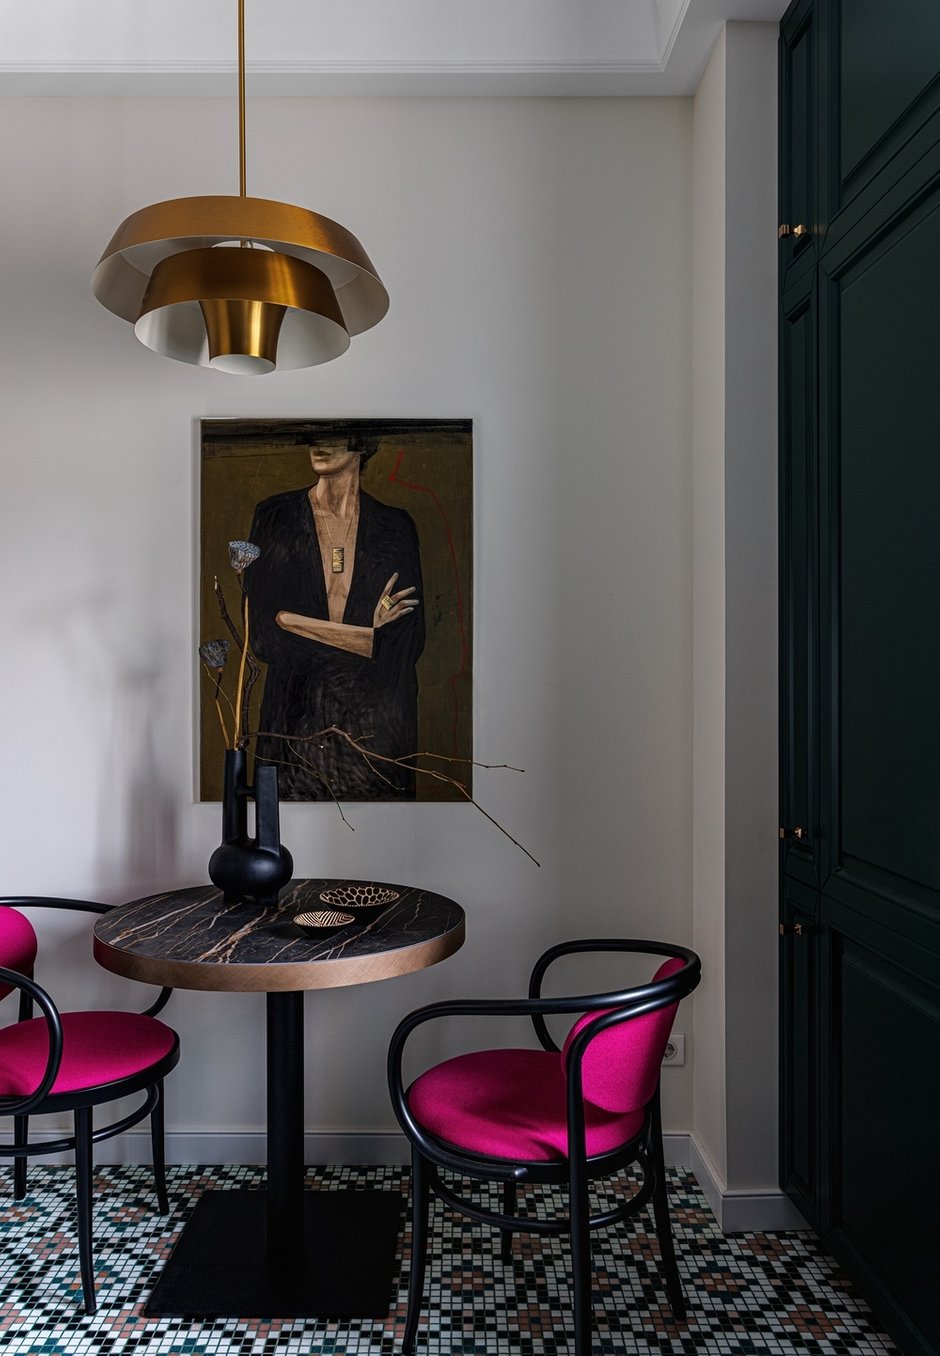 Кухня получилась яркой и чем-то напоминающей атмосферу парижского кафе – зеленая мебель, стулья Thonet цвета фуксии, светильник в стиле ретро и картина над обеденным столом с загадочной дамой, вызывающая ассоциации с Ахматовой.